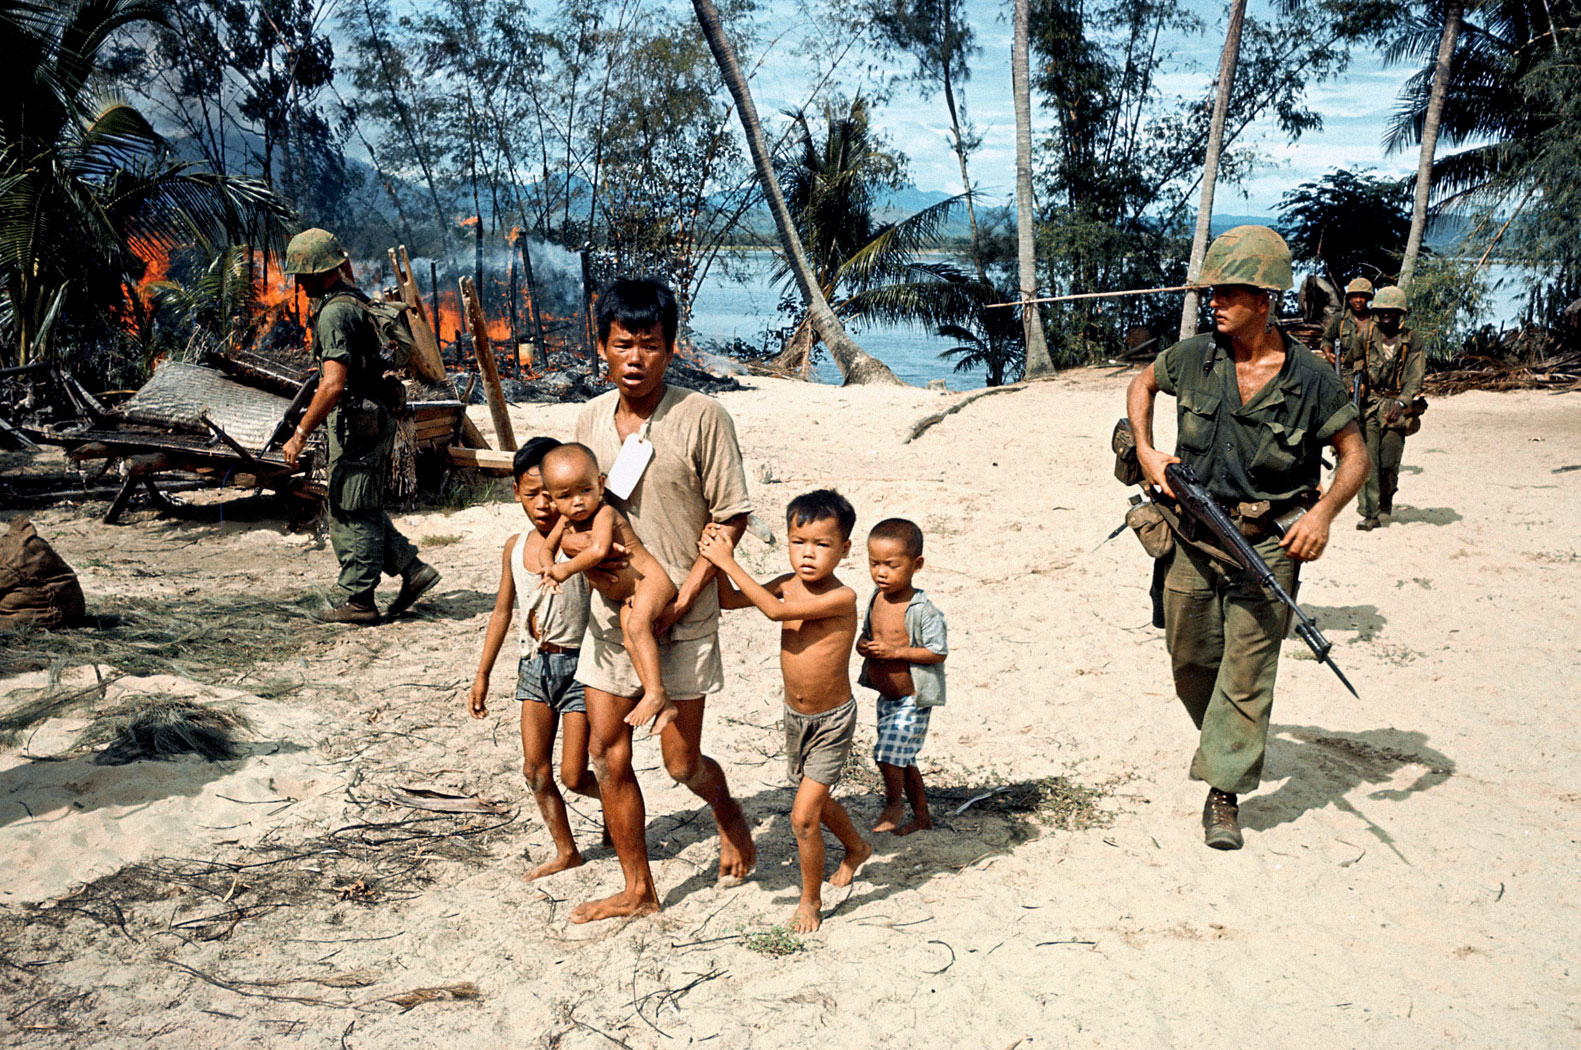 Война во Вьетнаме, которую вели США, была одной из самых кровавых, бесчеловечных и грязных войн второй половины XX столетия